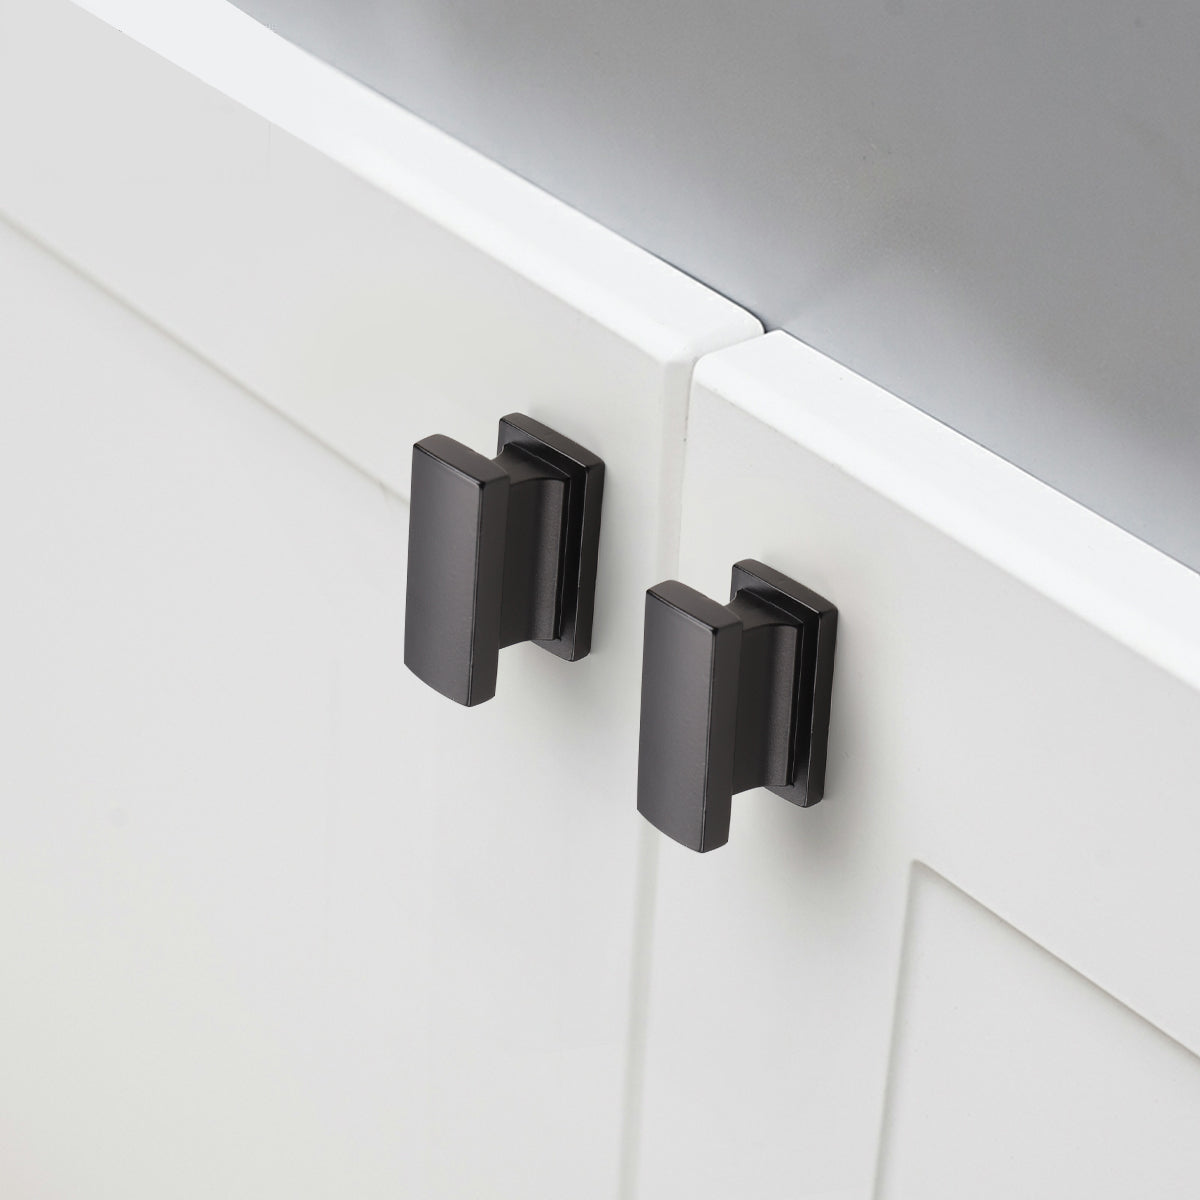 Modern Black Cabinet Hardware: Black Cabinet Pulls, Knobs & Handles